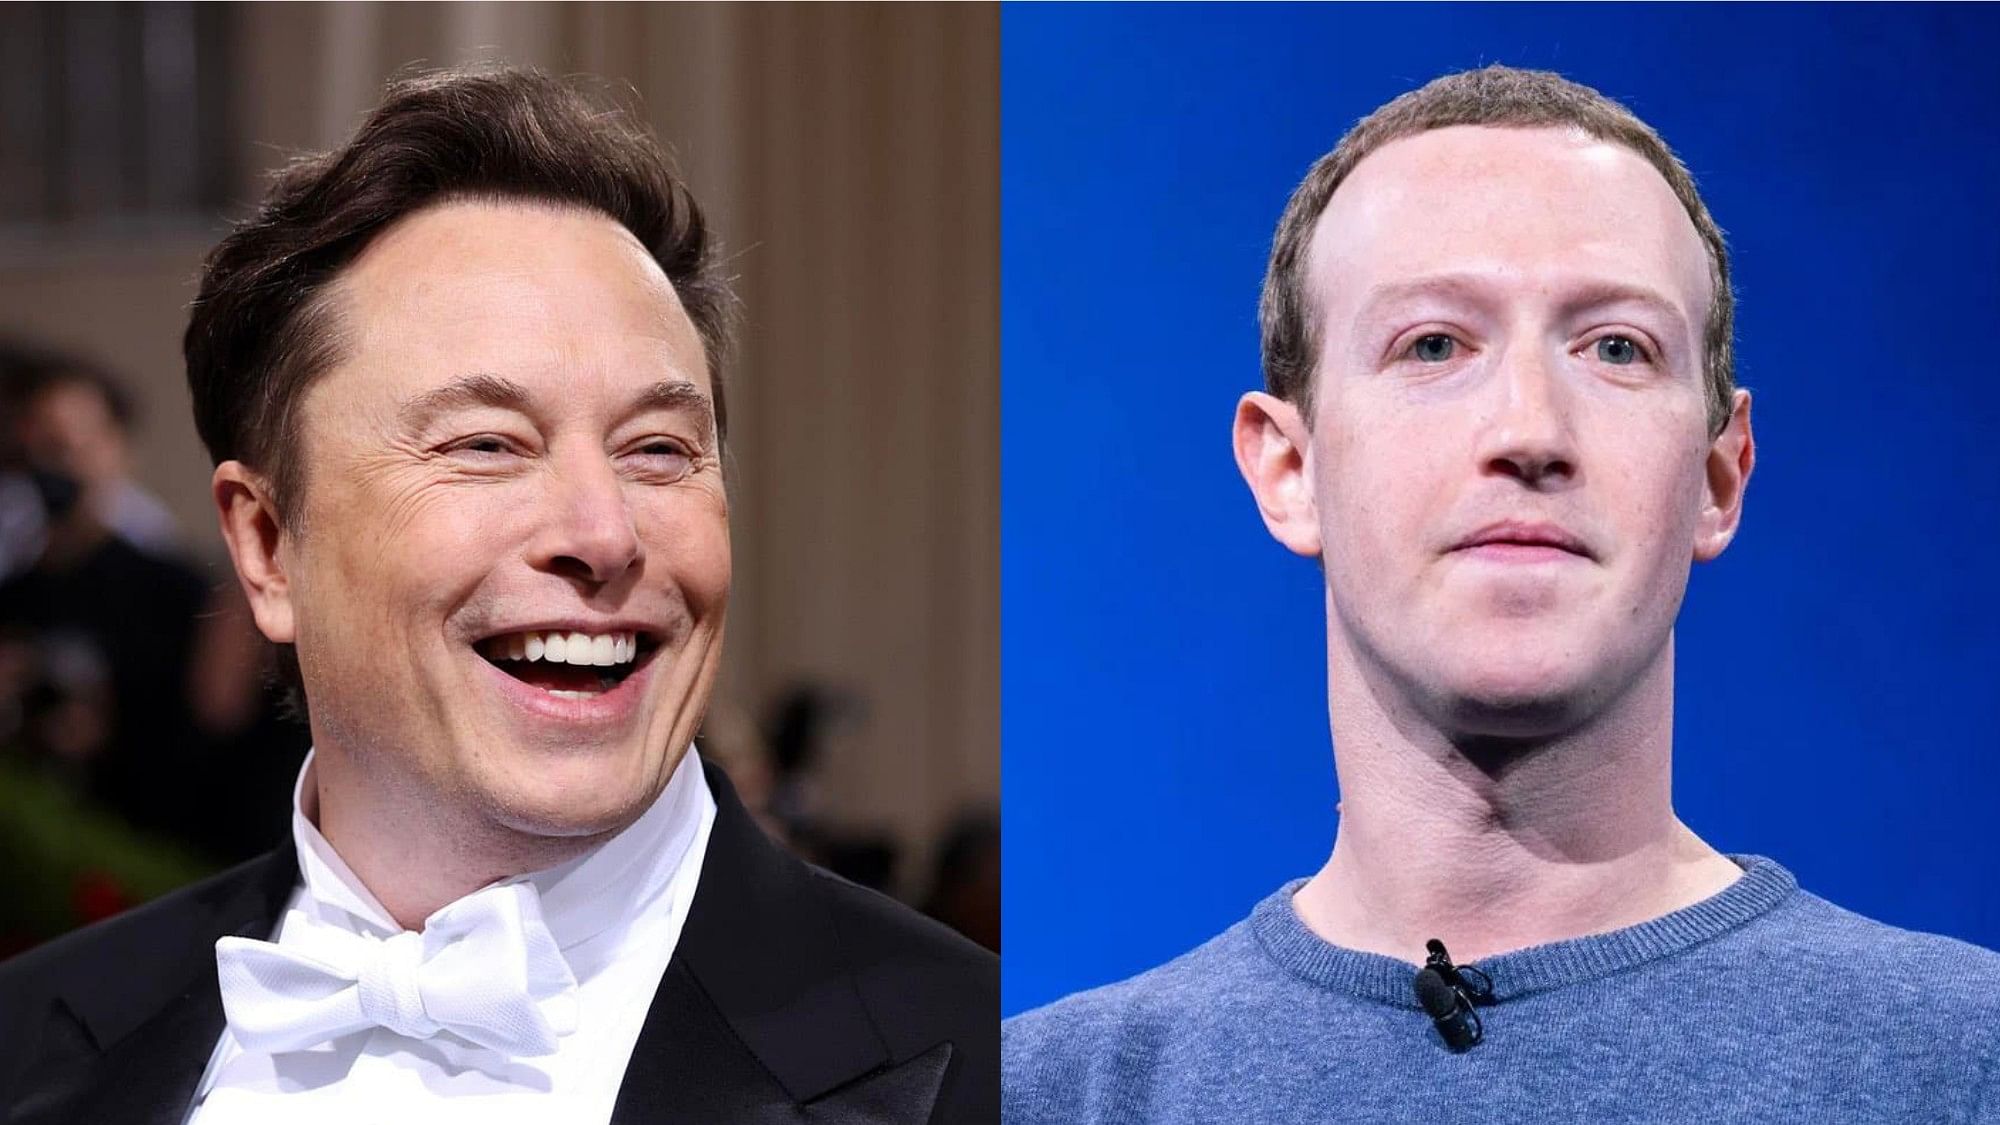 <div class="paragraphs"><p>Elon Musk (left) and Mark Zuckerberg.&nbsp;</p></div>